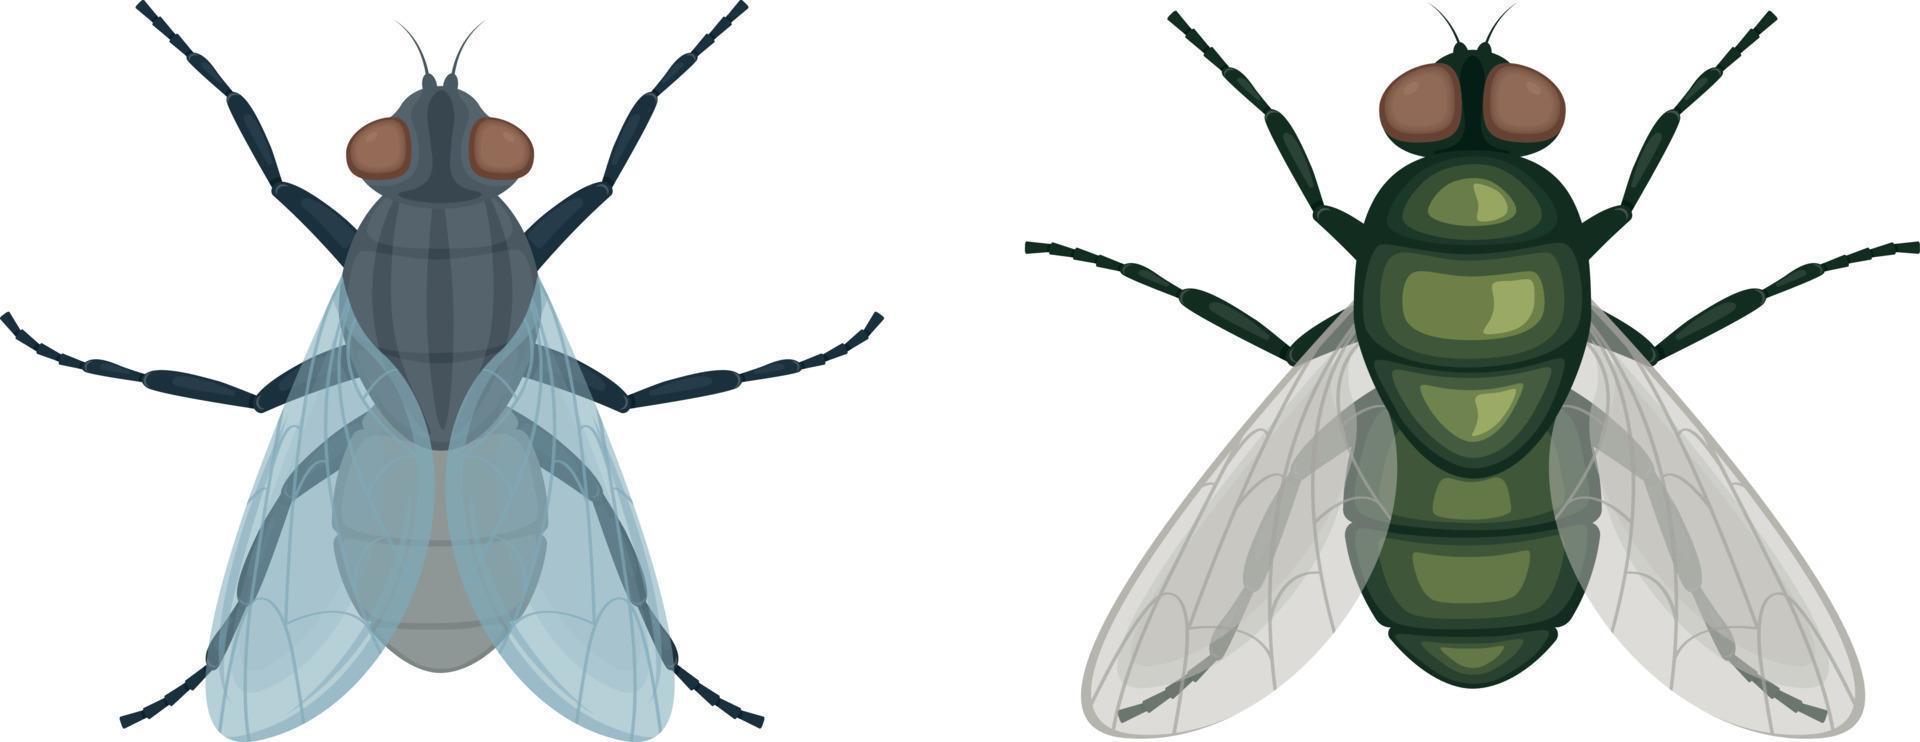 de grön flyga .flyga insekt. bild av en flyga topp se. en flygande insekt. vektor illustration isolerat på en vit bakgrund.